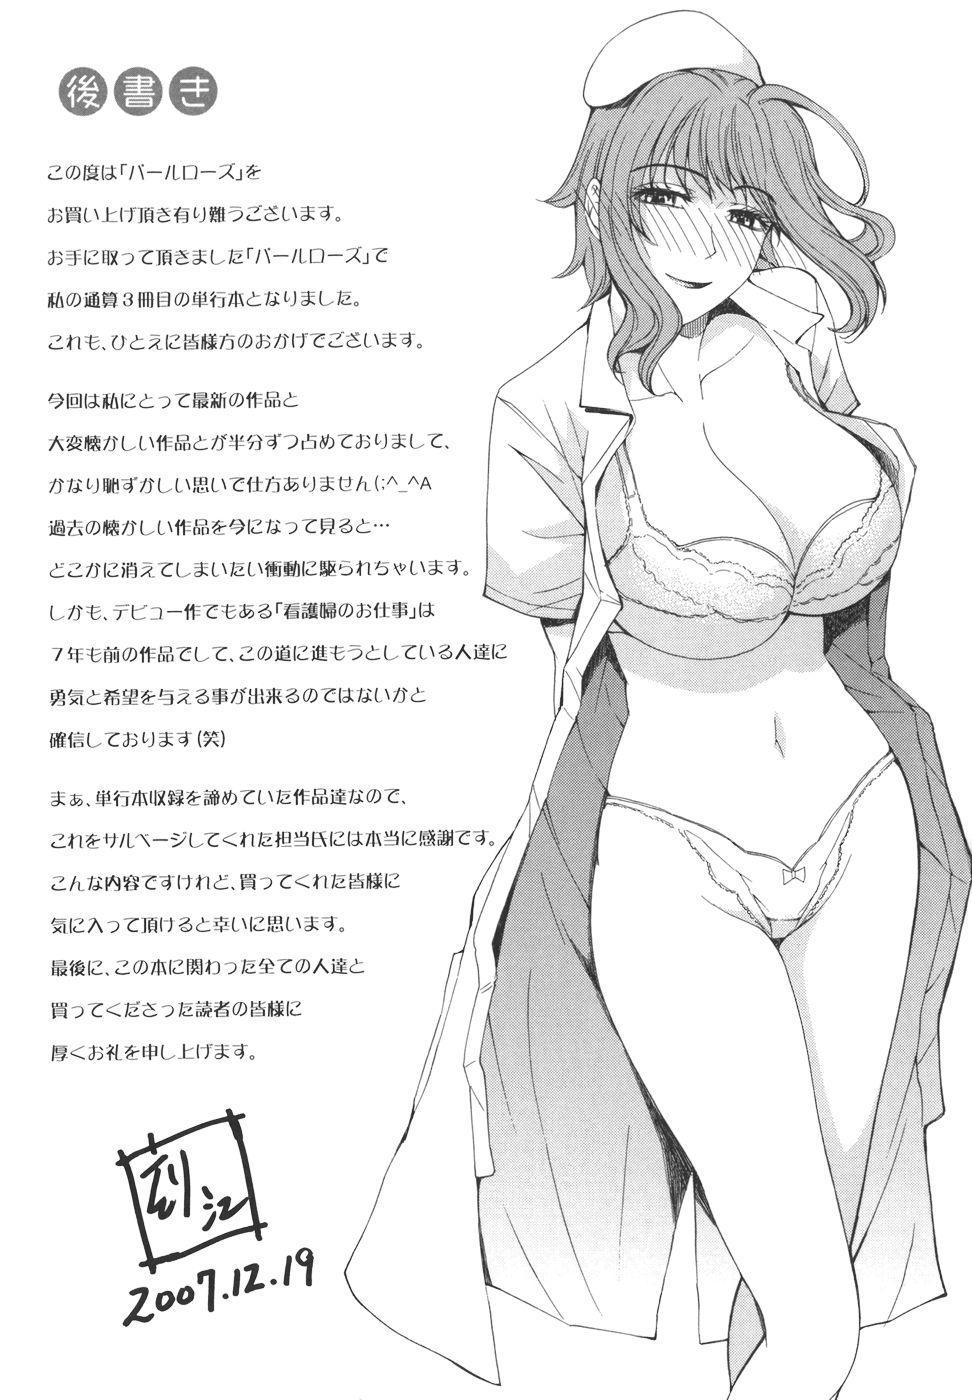 Pearl Rose 218 hentai manga